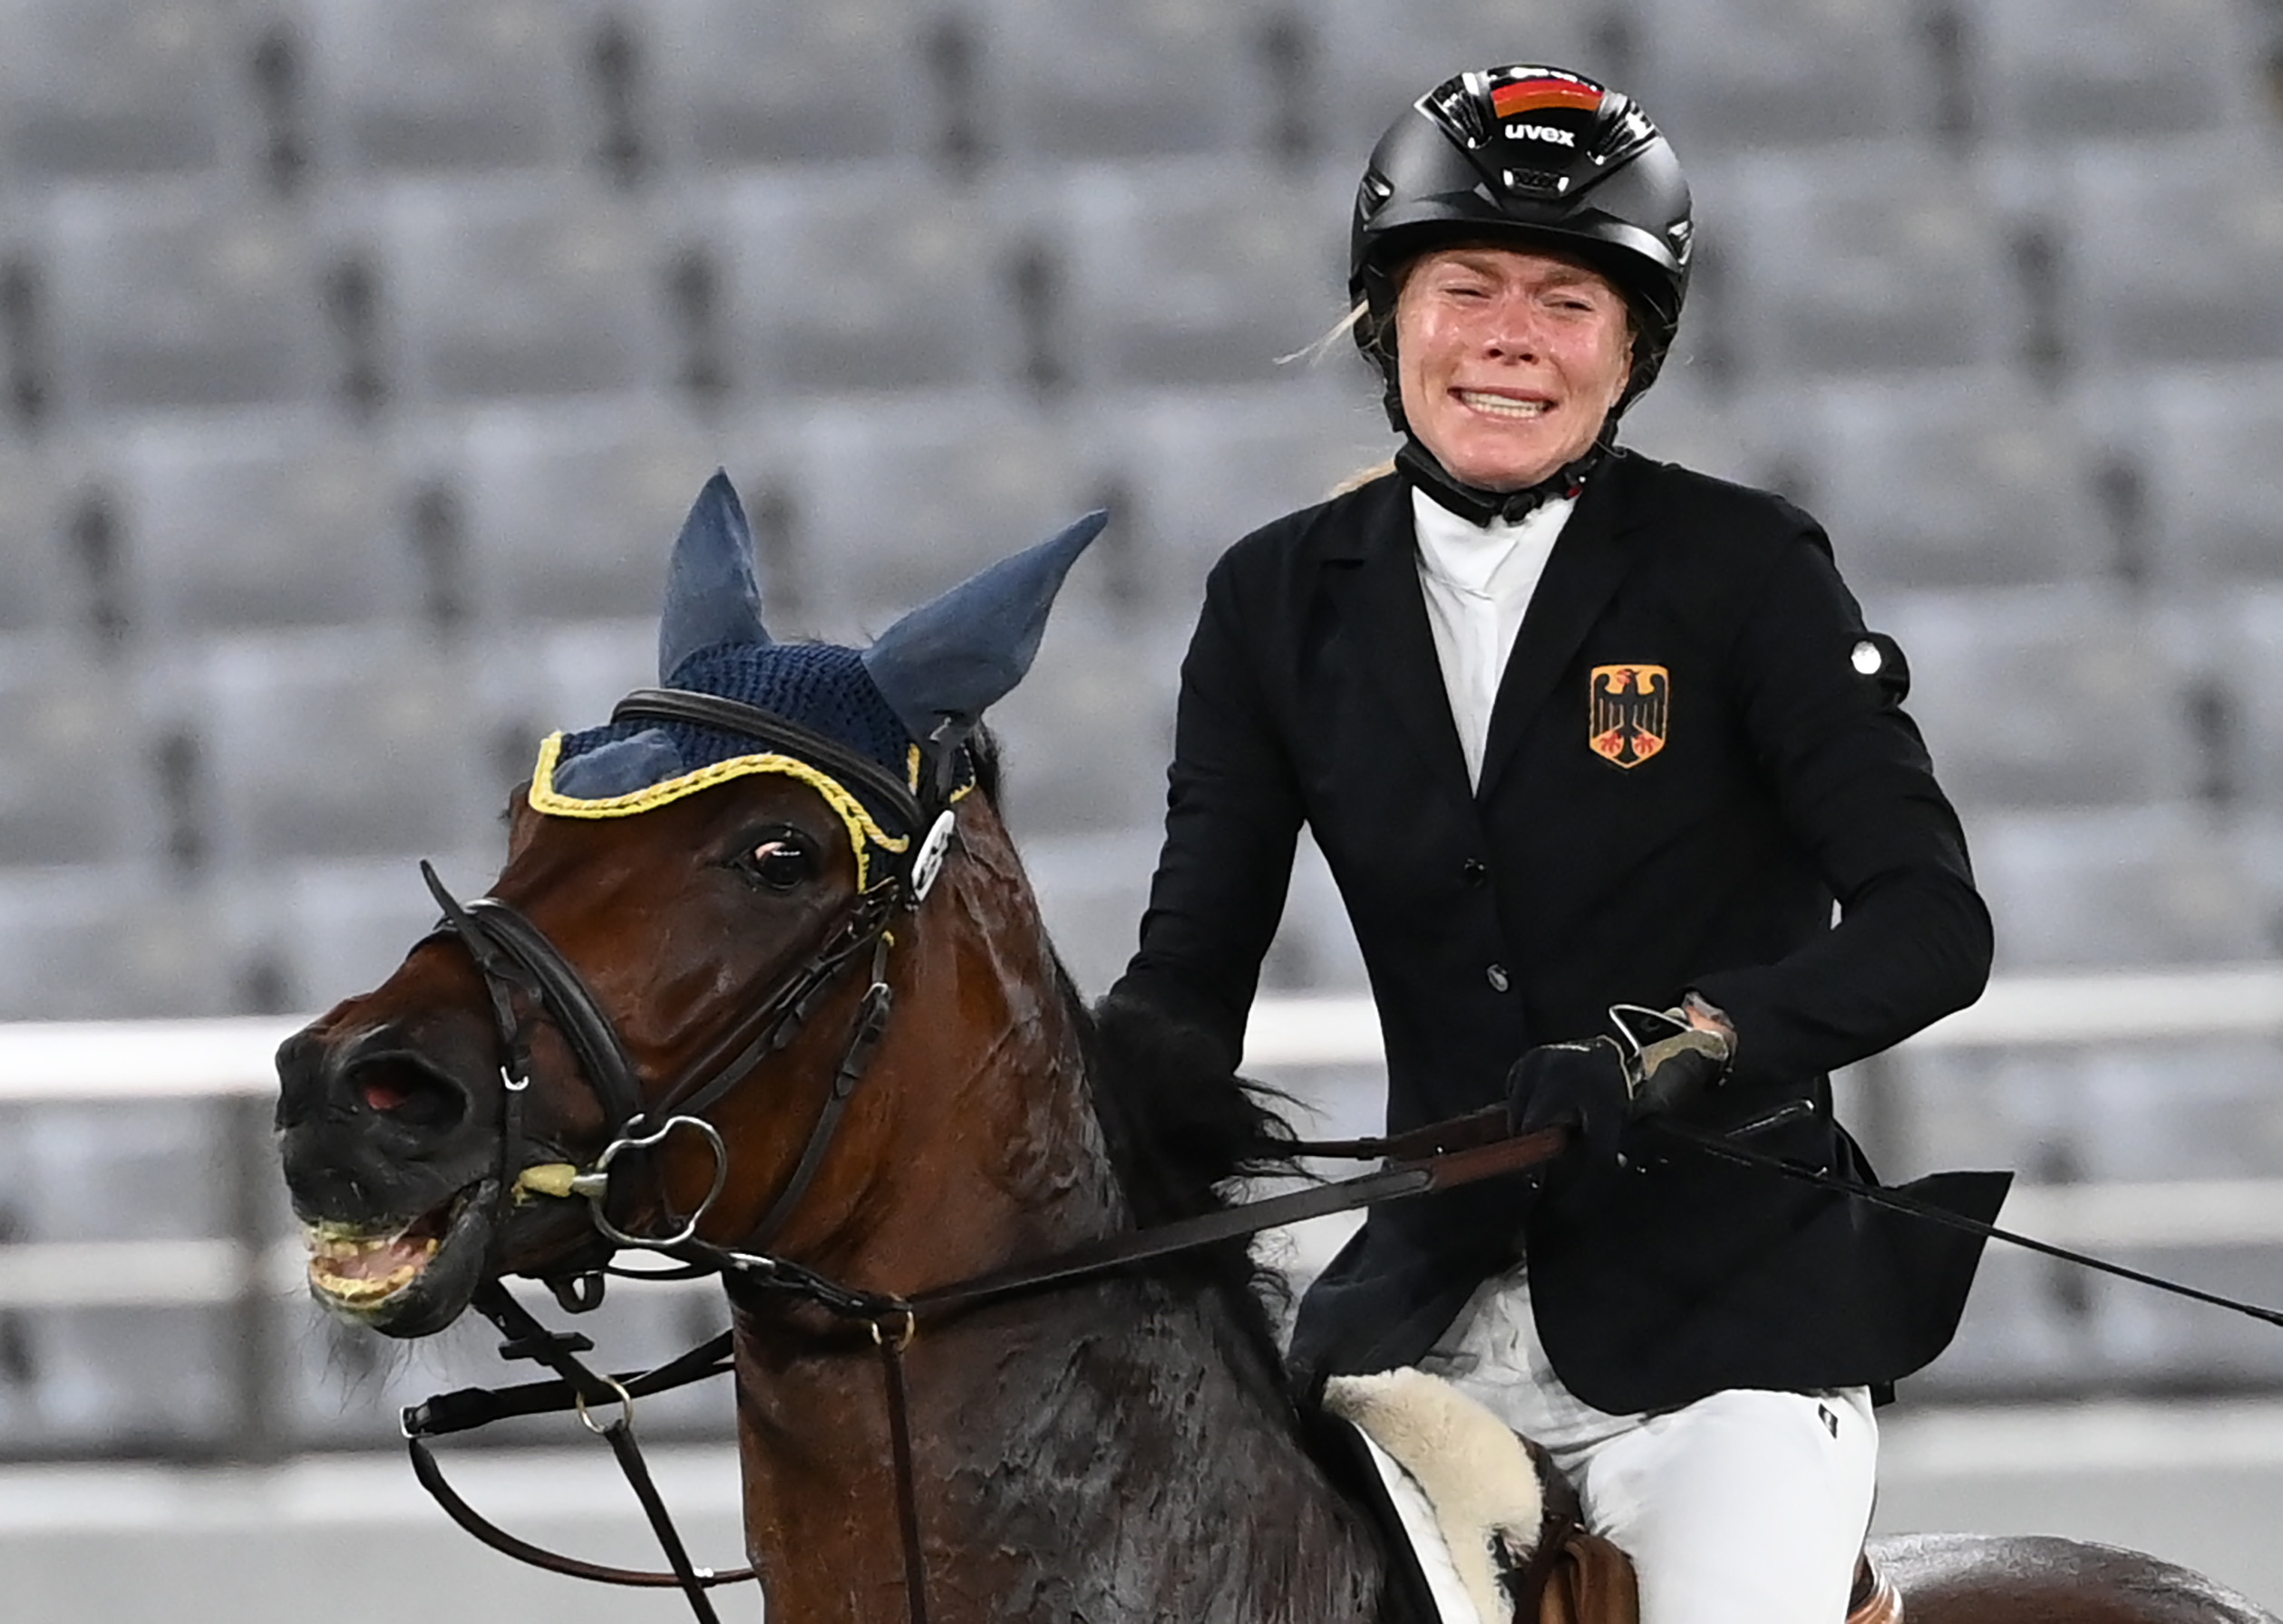 Annika Schleu auf ihrem Pferd.